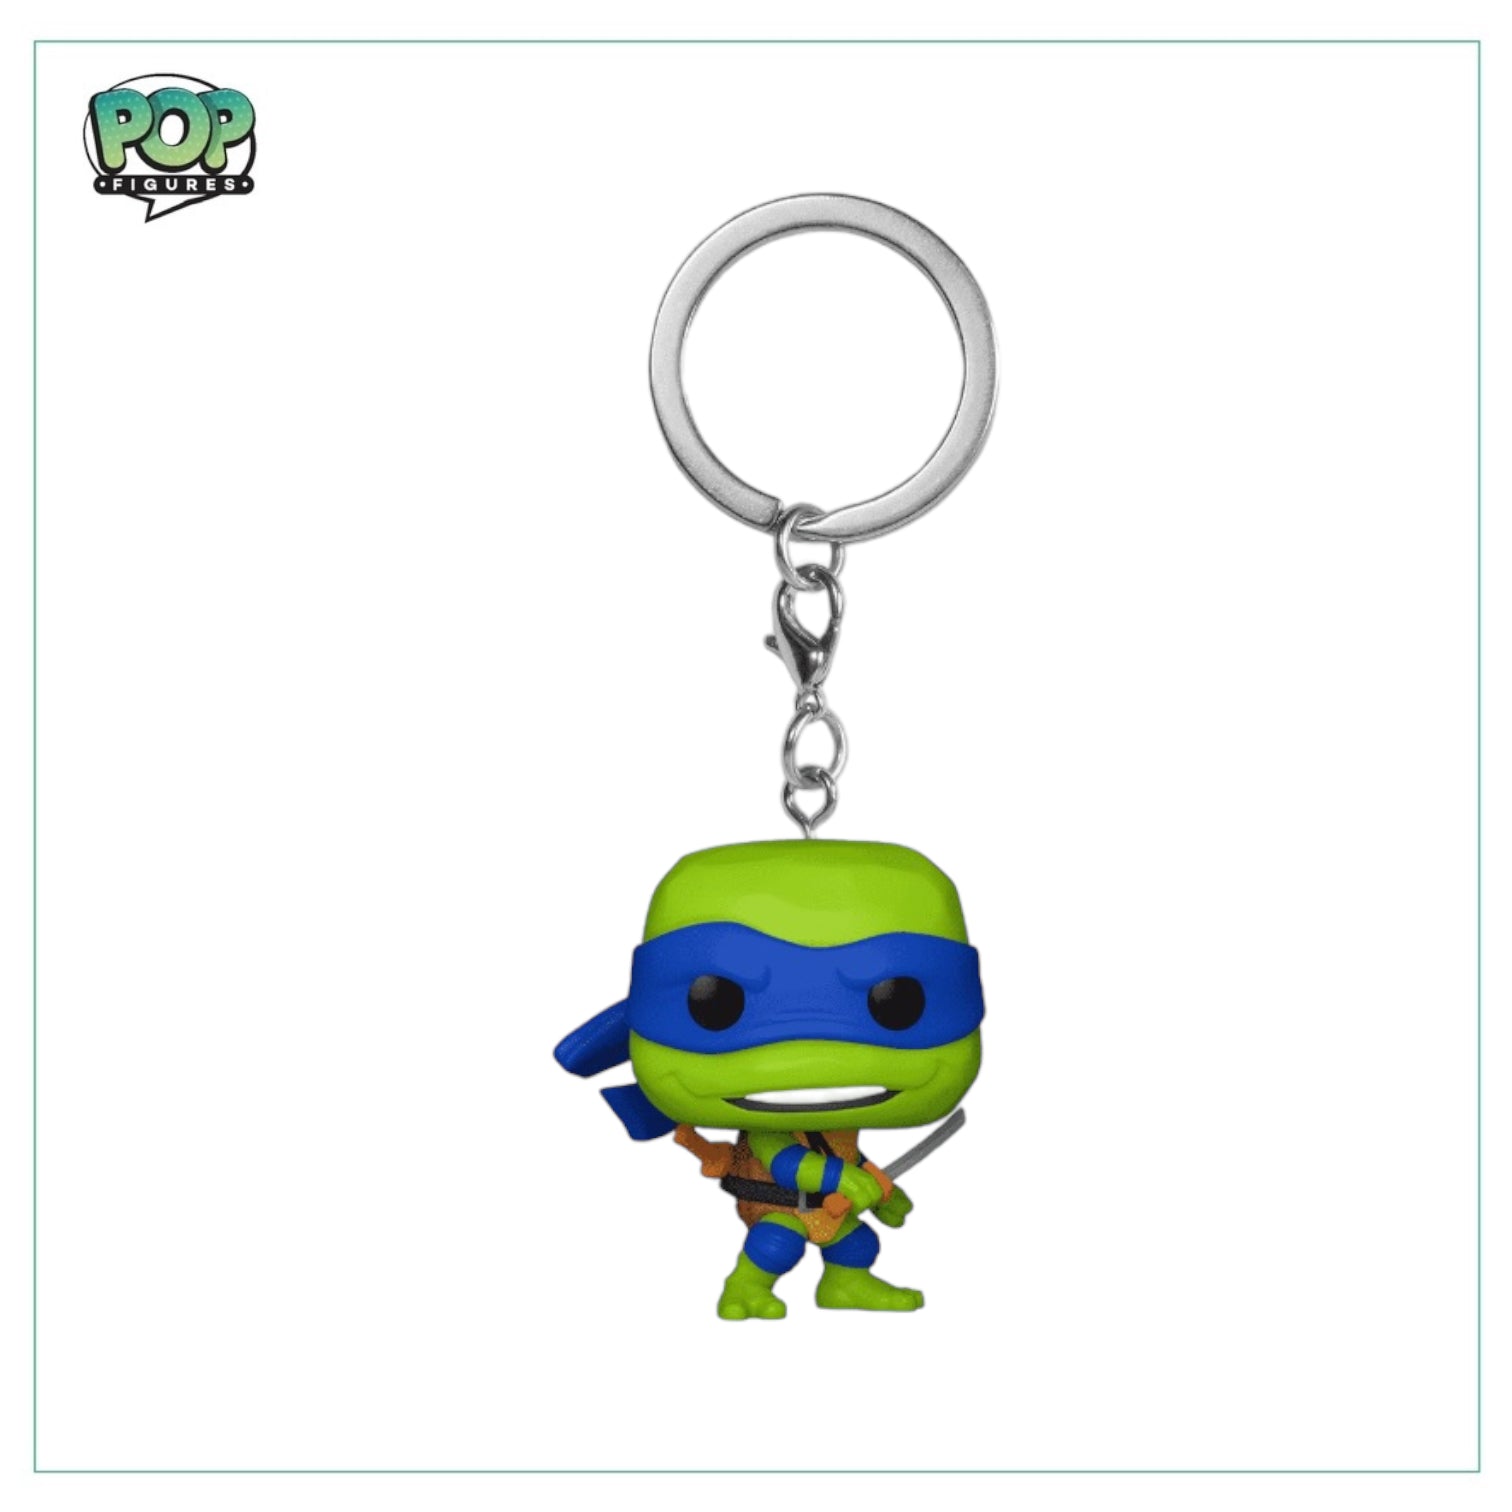 Leonardo Funko Pocket Pop Keychain - Teenage Mutant Ninja Turtles